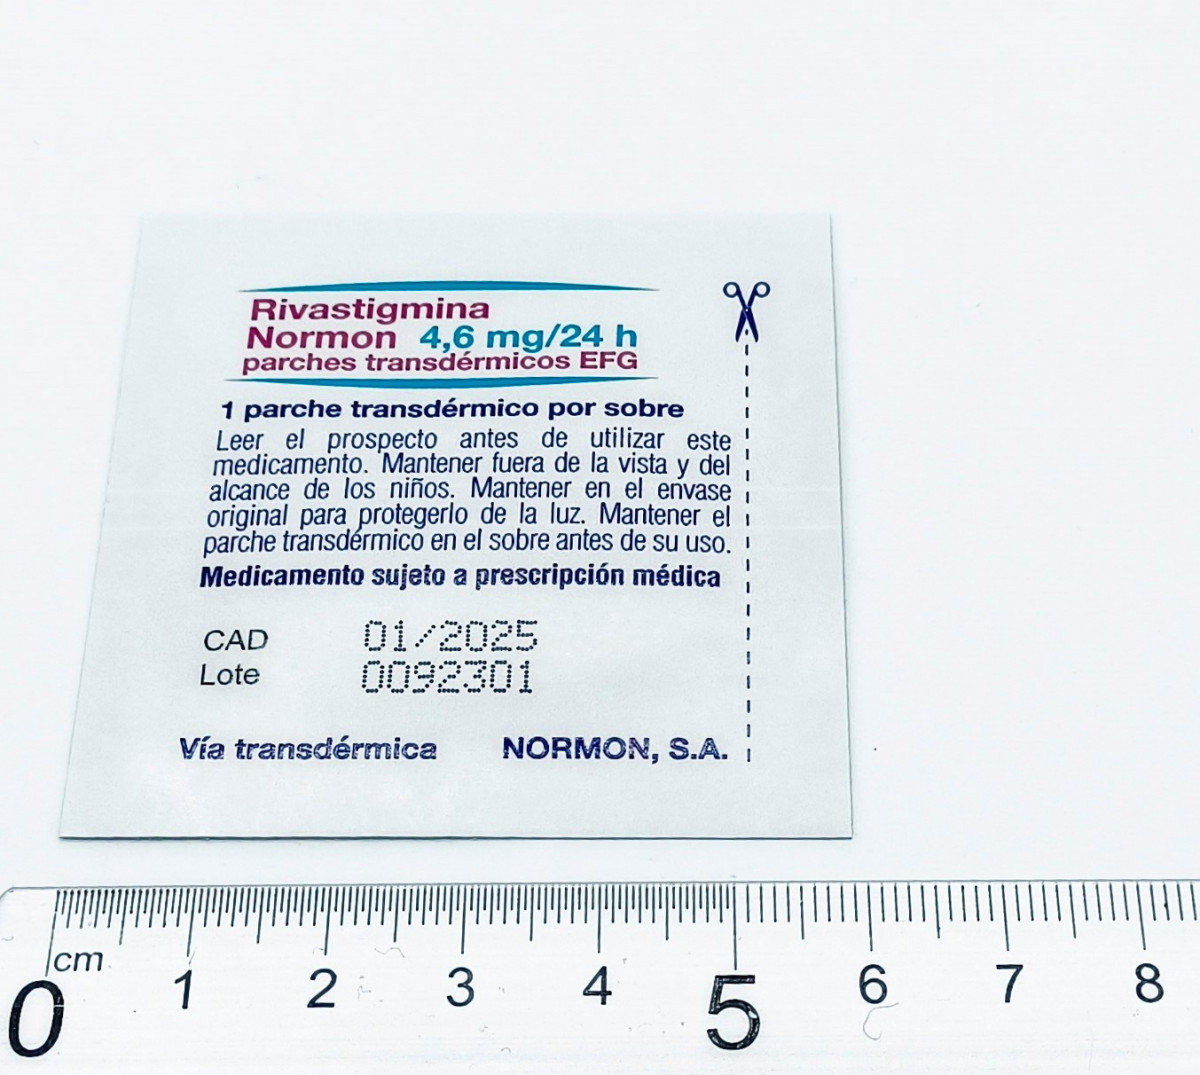 RIVASTIGMINA NORMON 4,6 MG/24 H PARCHES TRANSDERMICOS EFG, 30 parches transdérmicos fotografía de la forma farmacéutica.